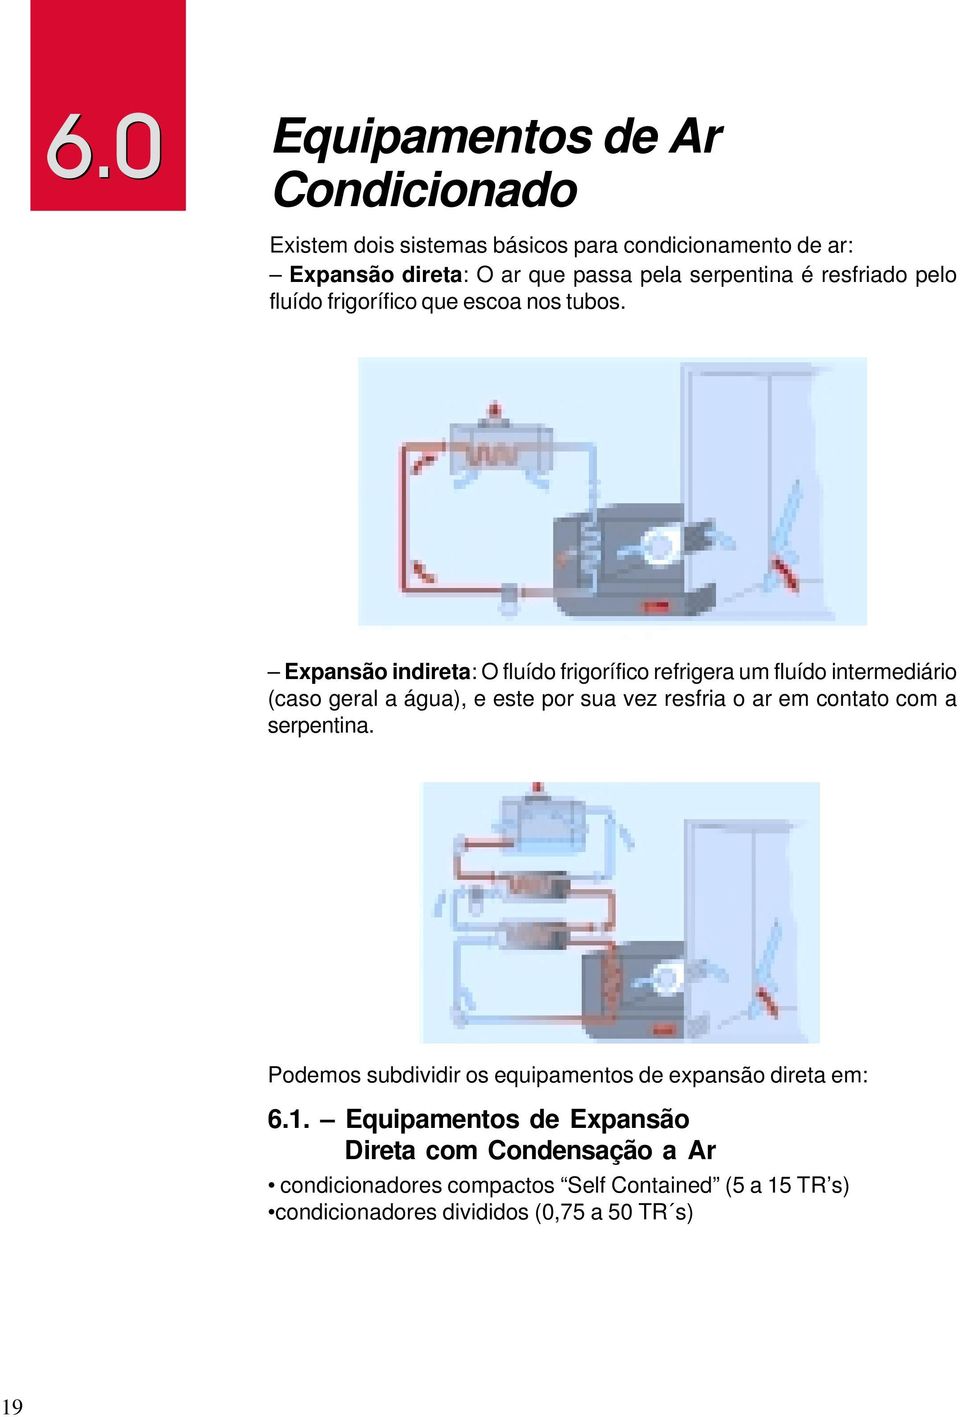 Expansão indireta: O fluído frigorífico refrigera um fluído intermediário (caso geral a água), e este por sua vez resfria o ar em contato com